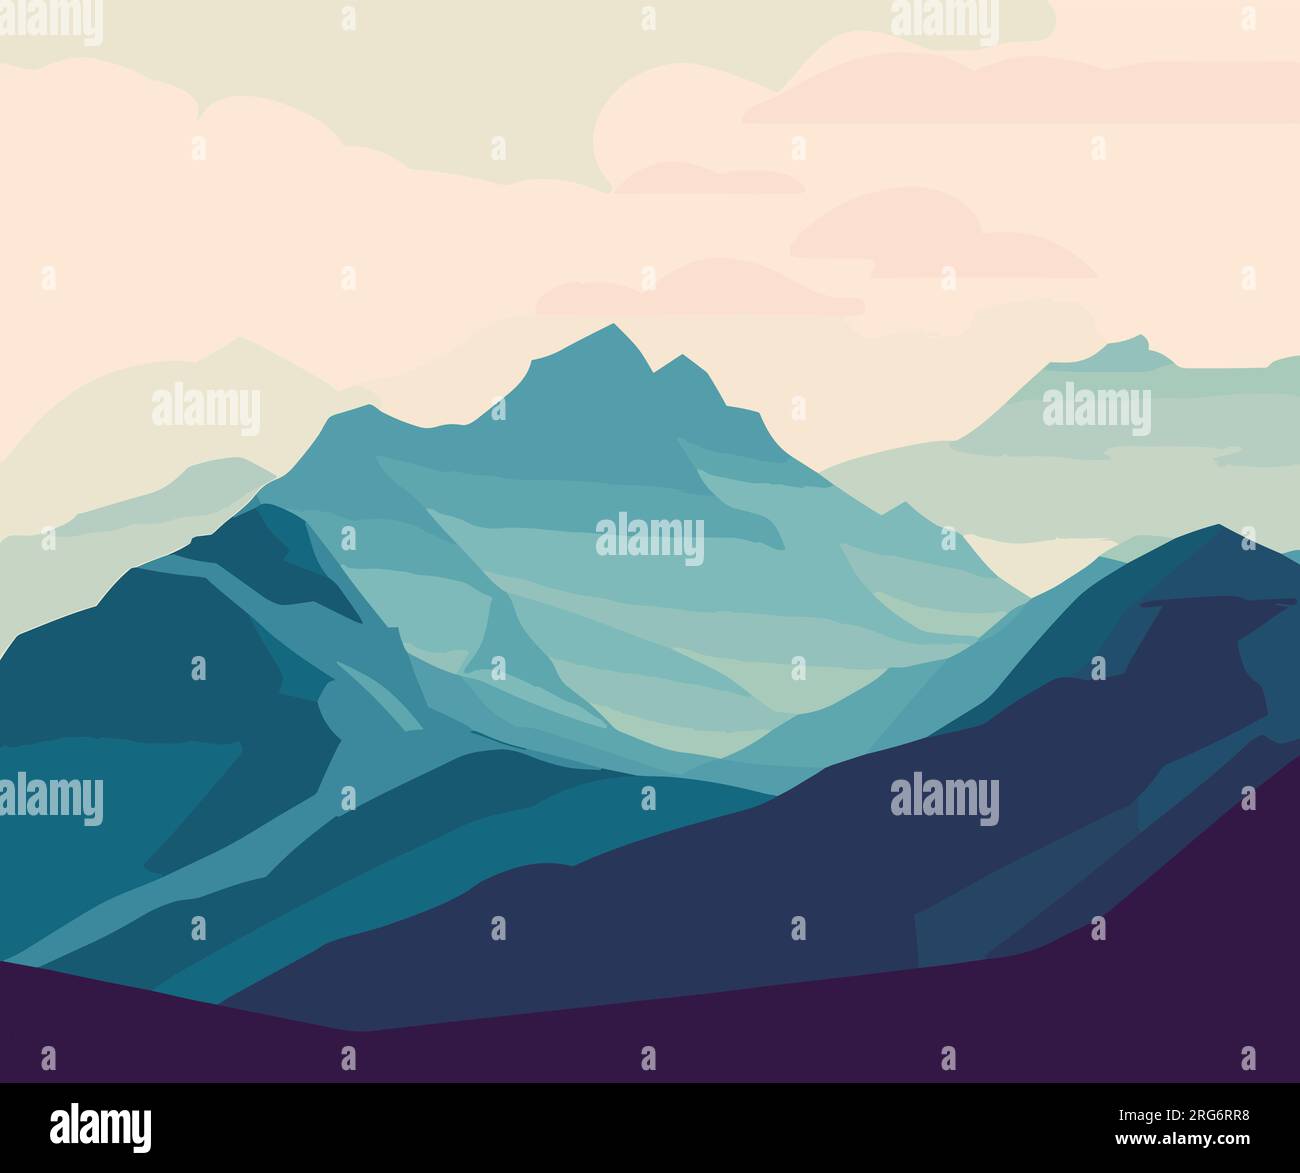 Flat minimalist mountain landscape illustration Stock Vector